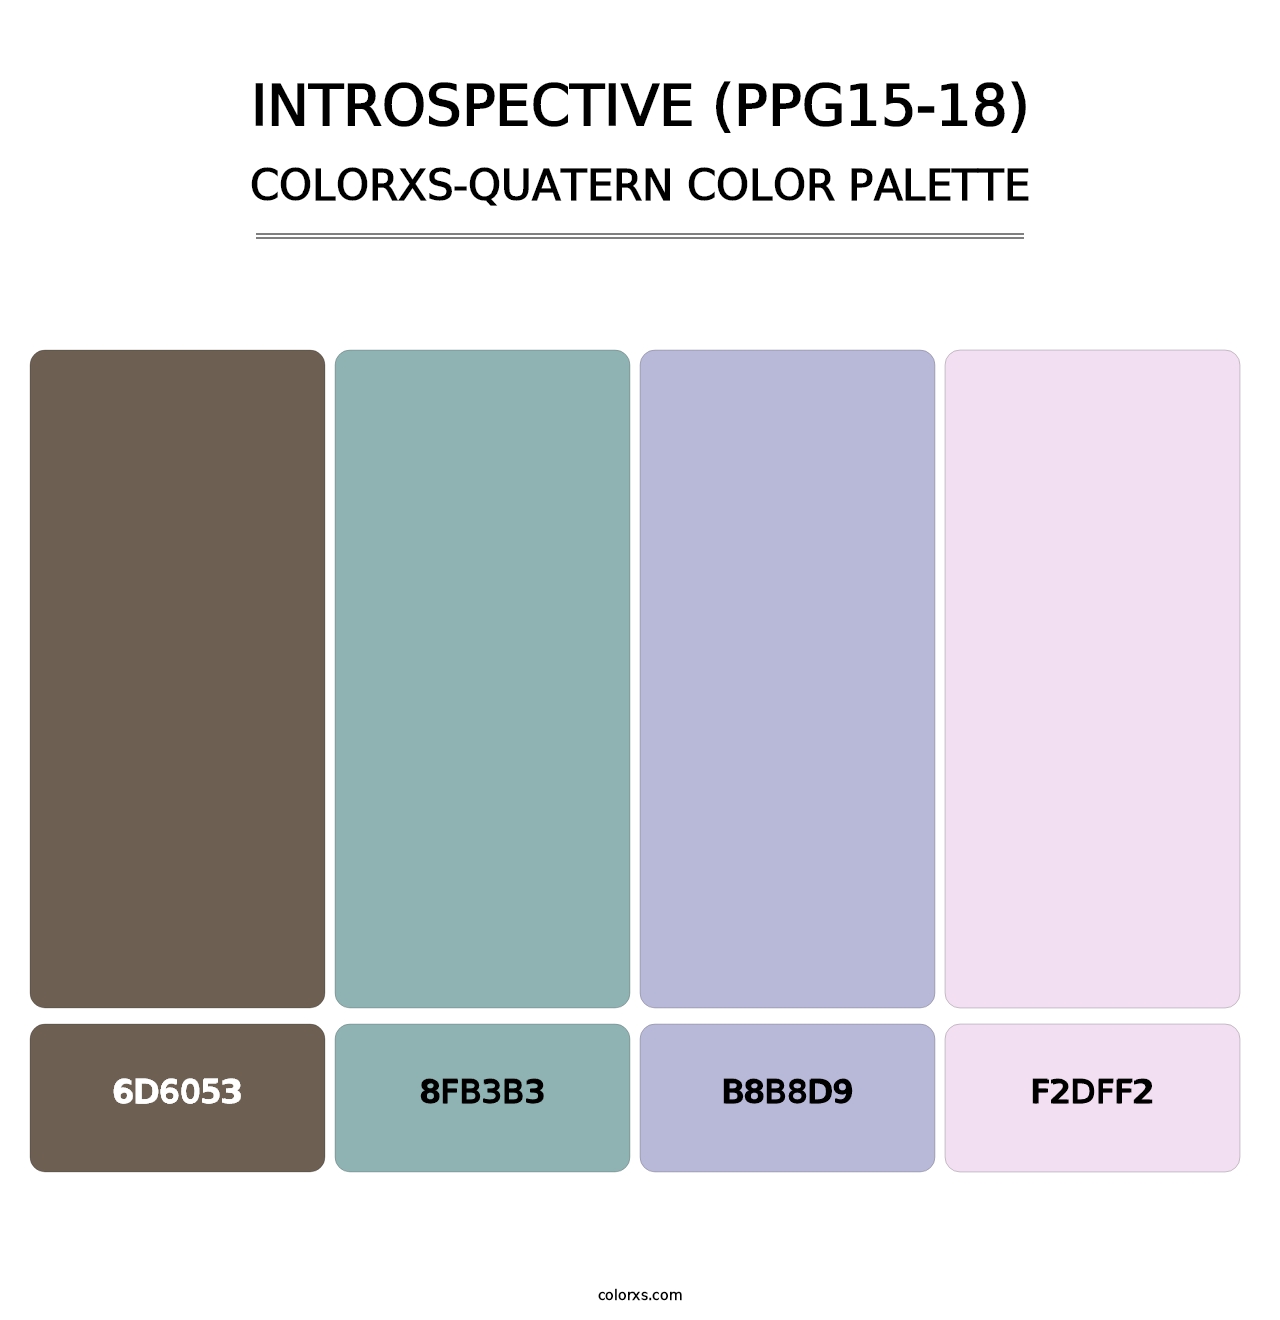 Introspective (PPG15-18) - Colorxs Quatern Palette